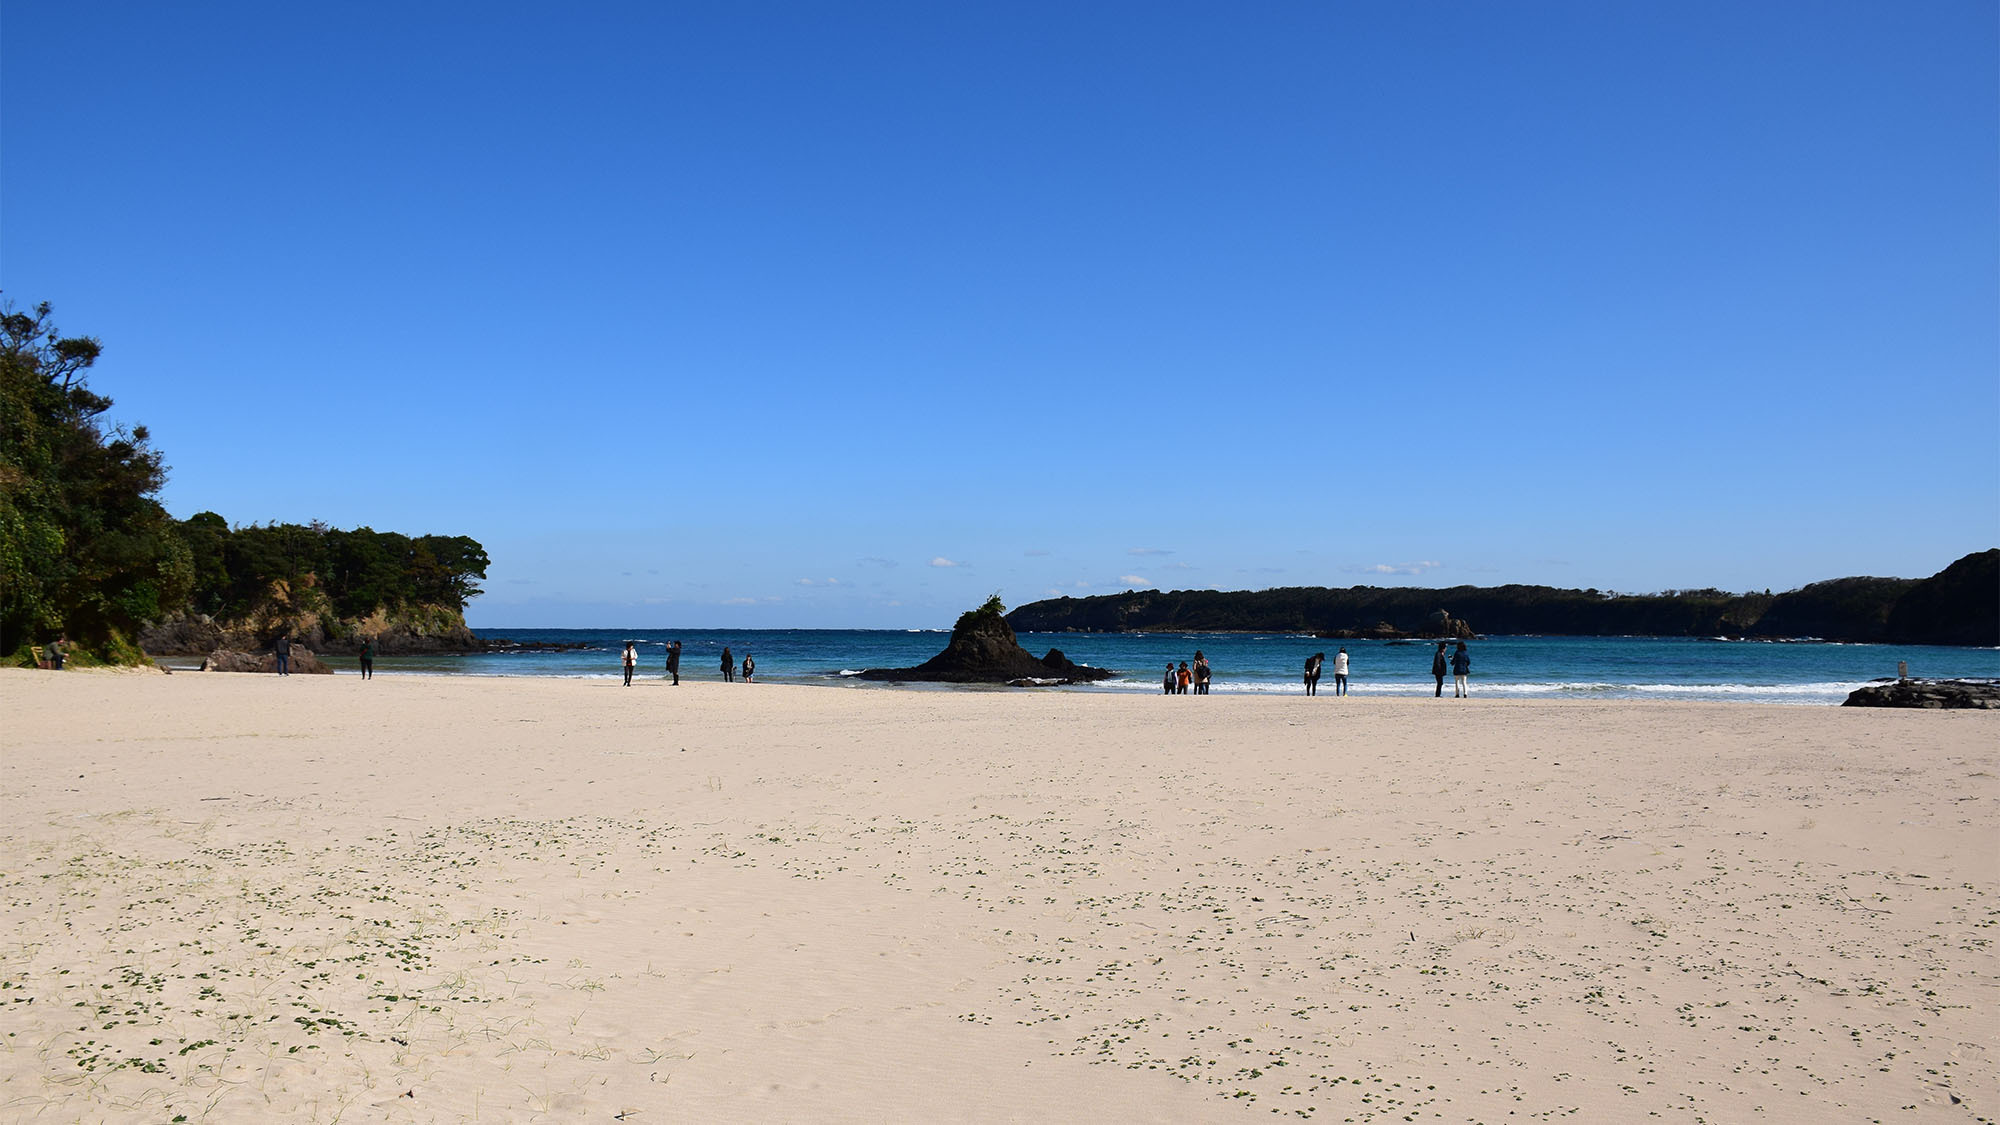 ・【三宇田浜】「日本の渚・百選」の認定を受けた対馬で有名な海水浴場です